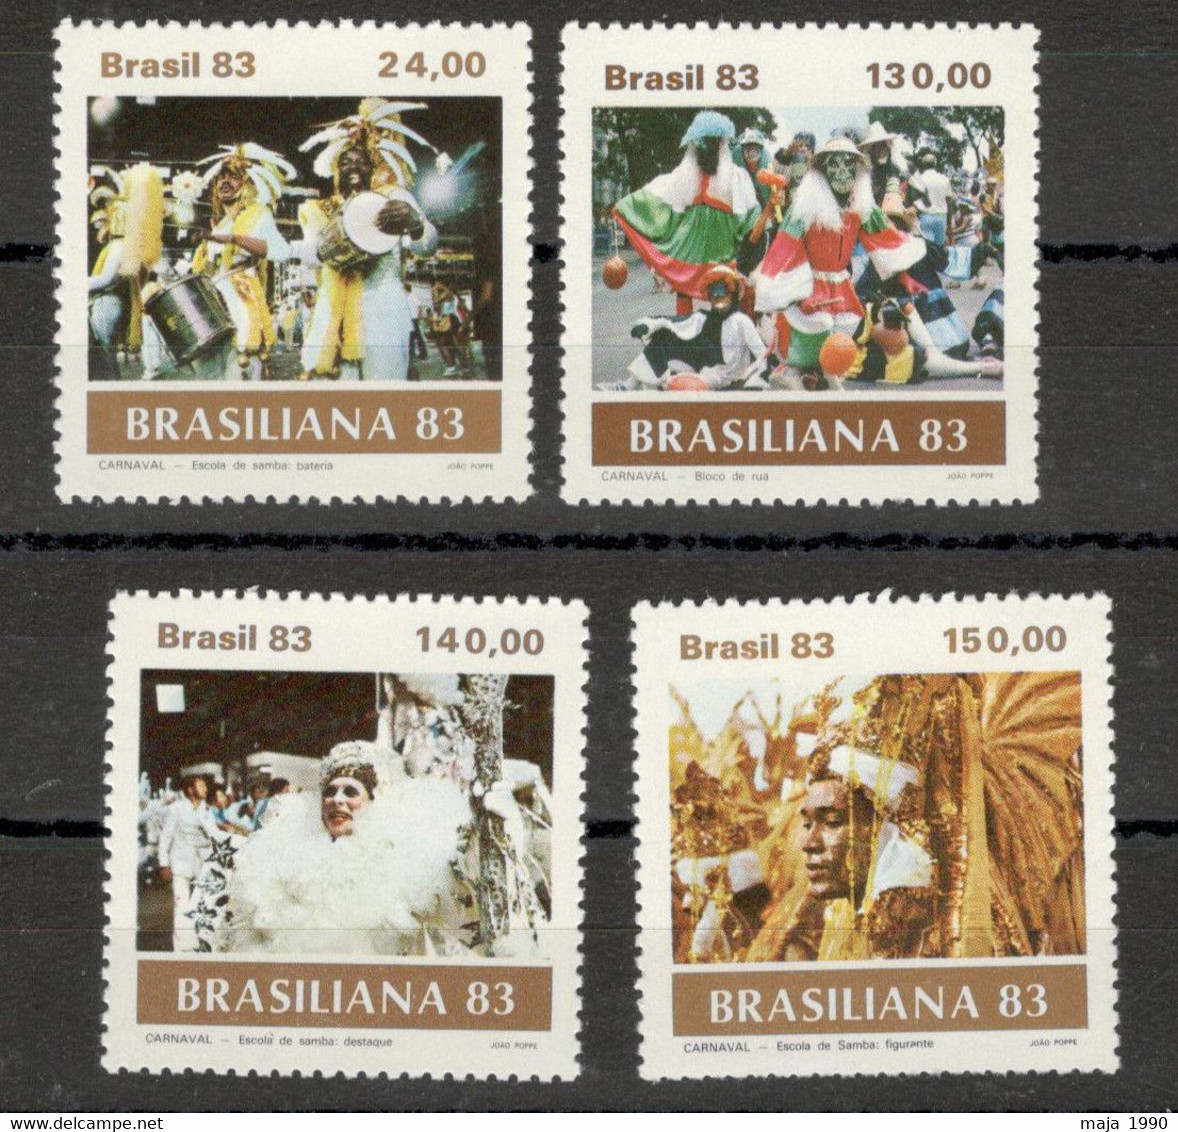 BRASIL - BRAZIL -MNH SET - CARNIVAL, BRASILIANA' 83, PHILATELIC EXP., DANCE - 1983 - Nuevos